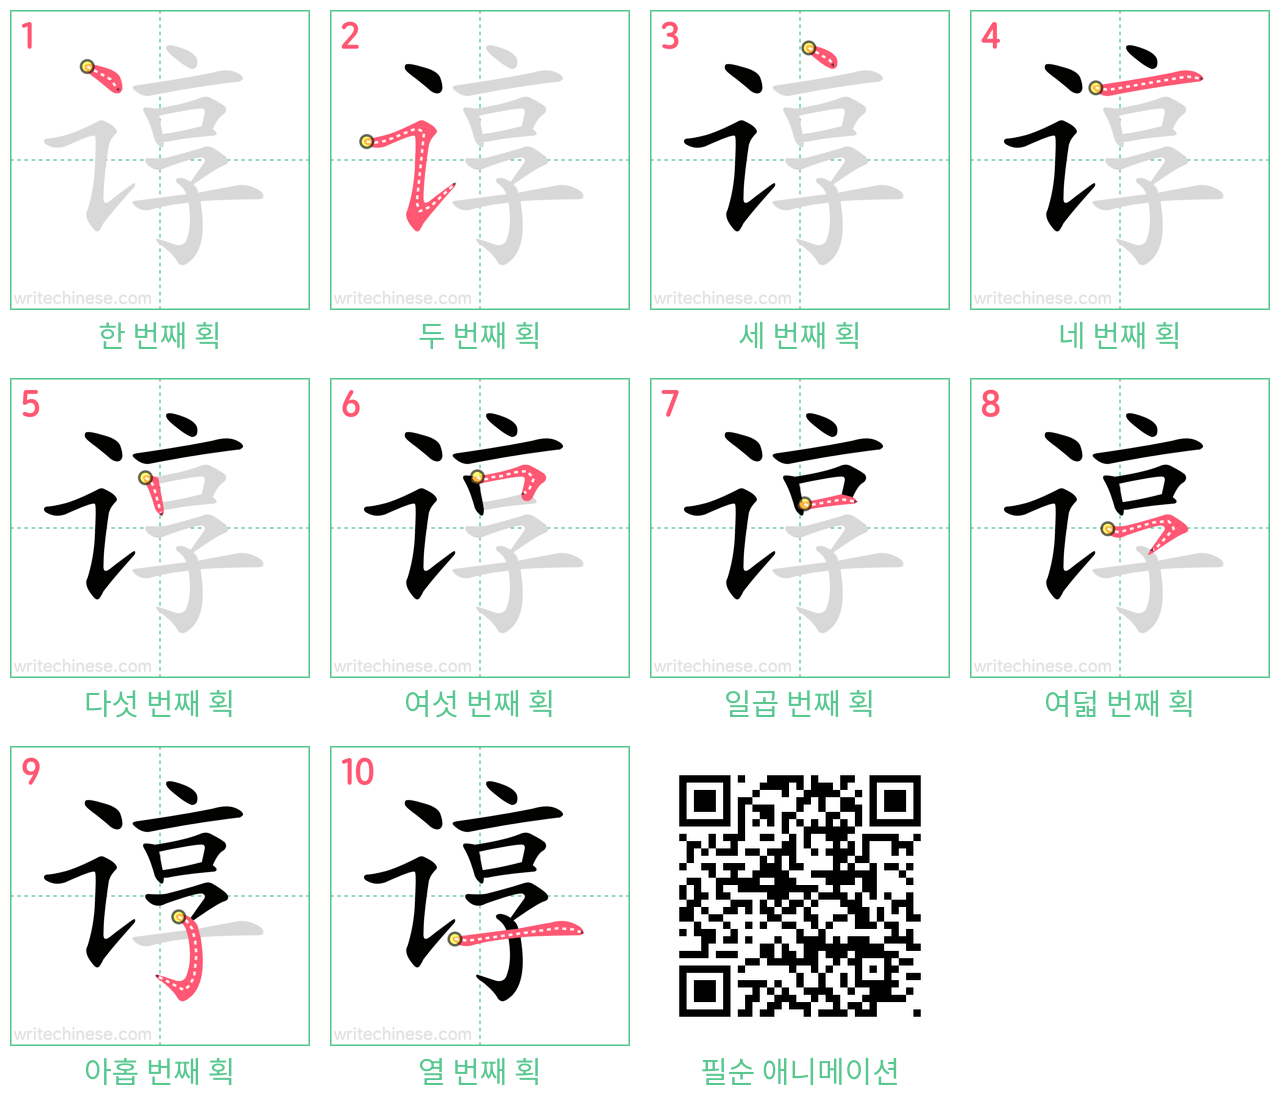 谆 step-by-step stroke order diagrams